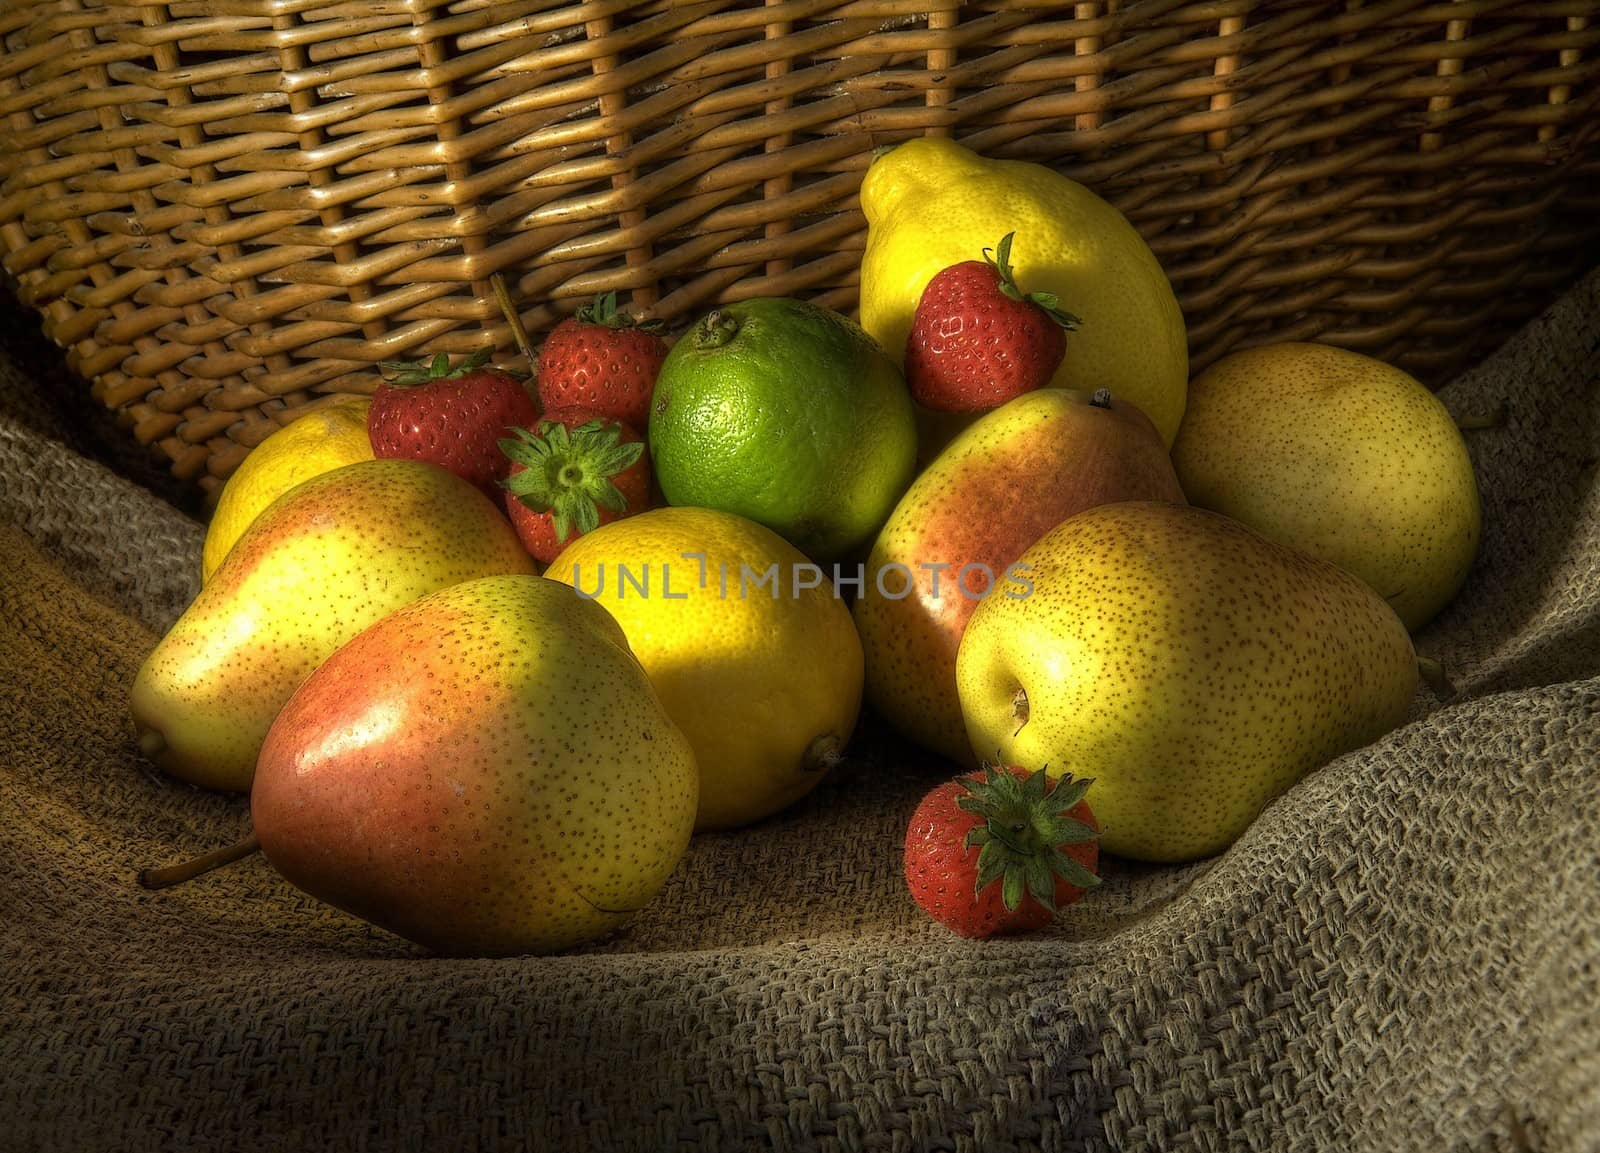 Fruit on hessian against a wicker basket.